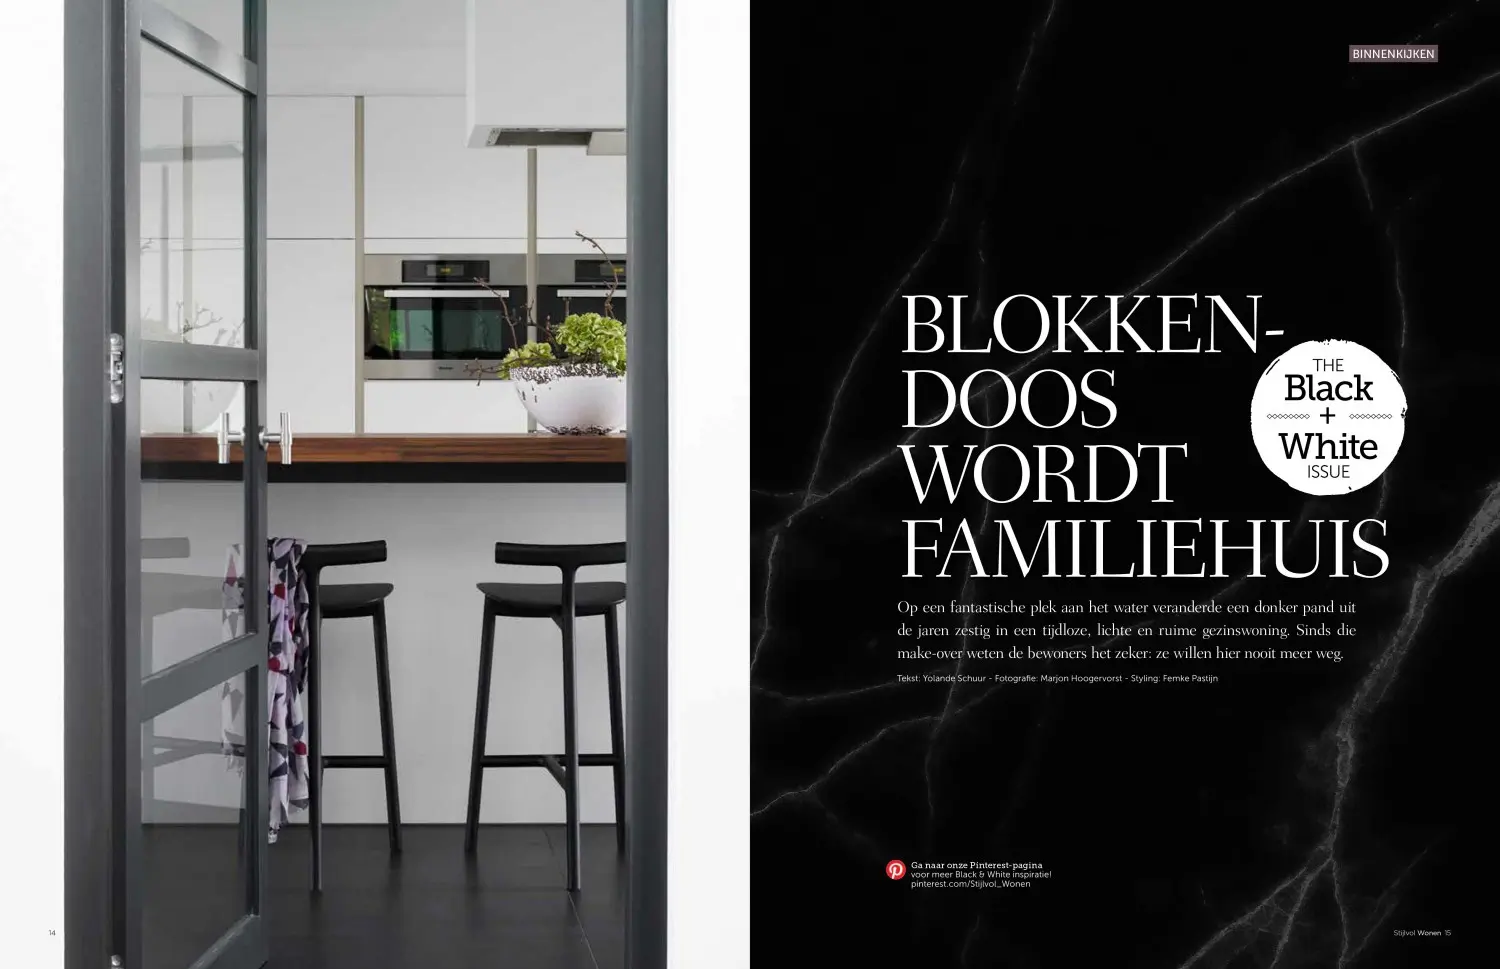 ENZO architectuur N interieur - Stijlvol Wonen - Blokkendoos wordt familiehuis